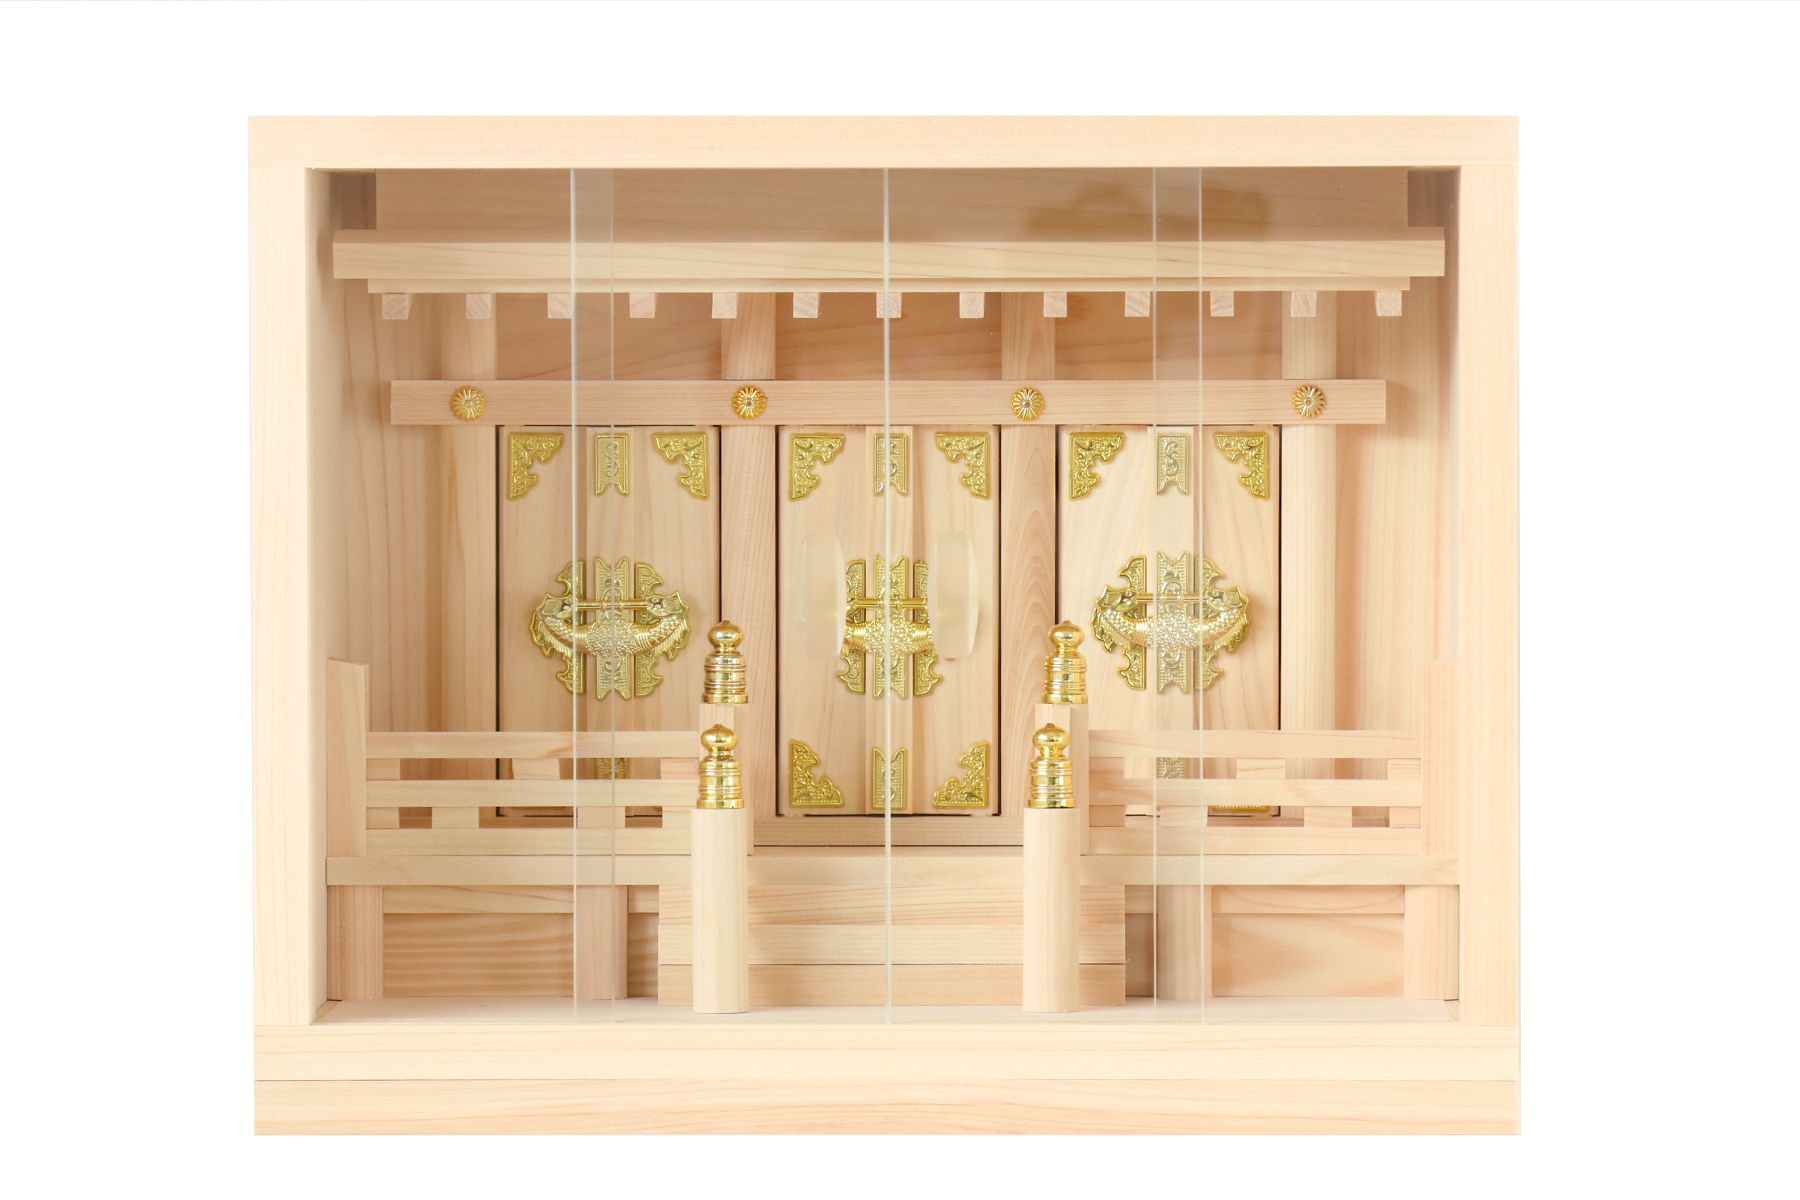 神棚 箱宮 三社 壁掛け 13号 特小サイズ 引出し付 上位東濃ひのき